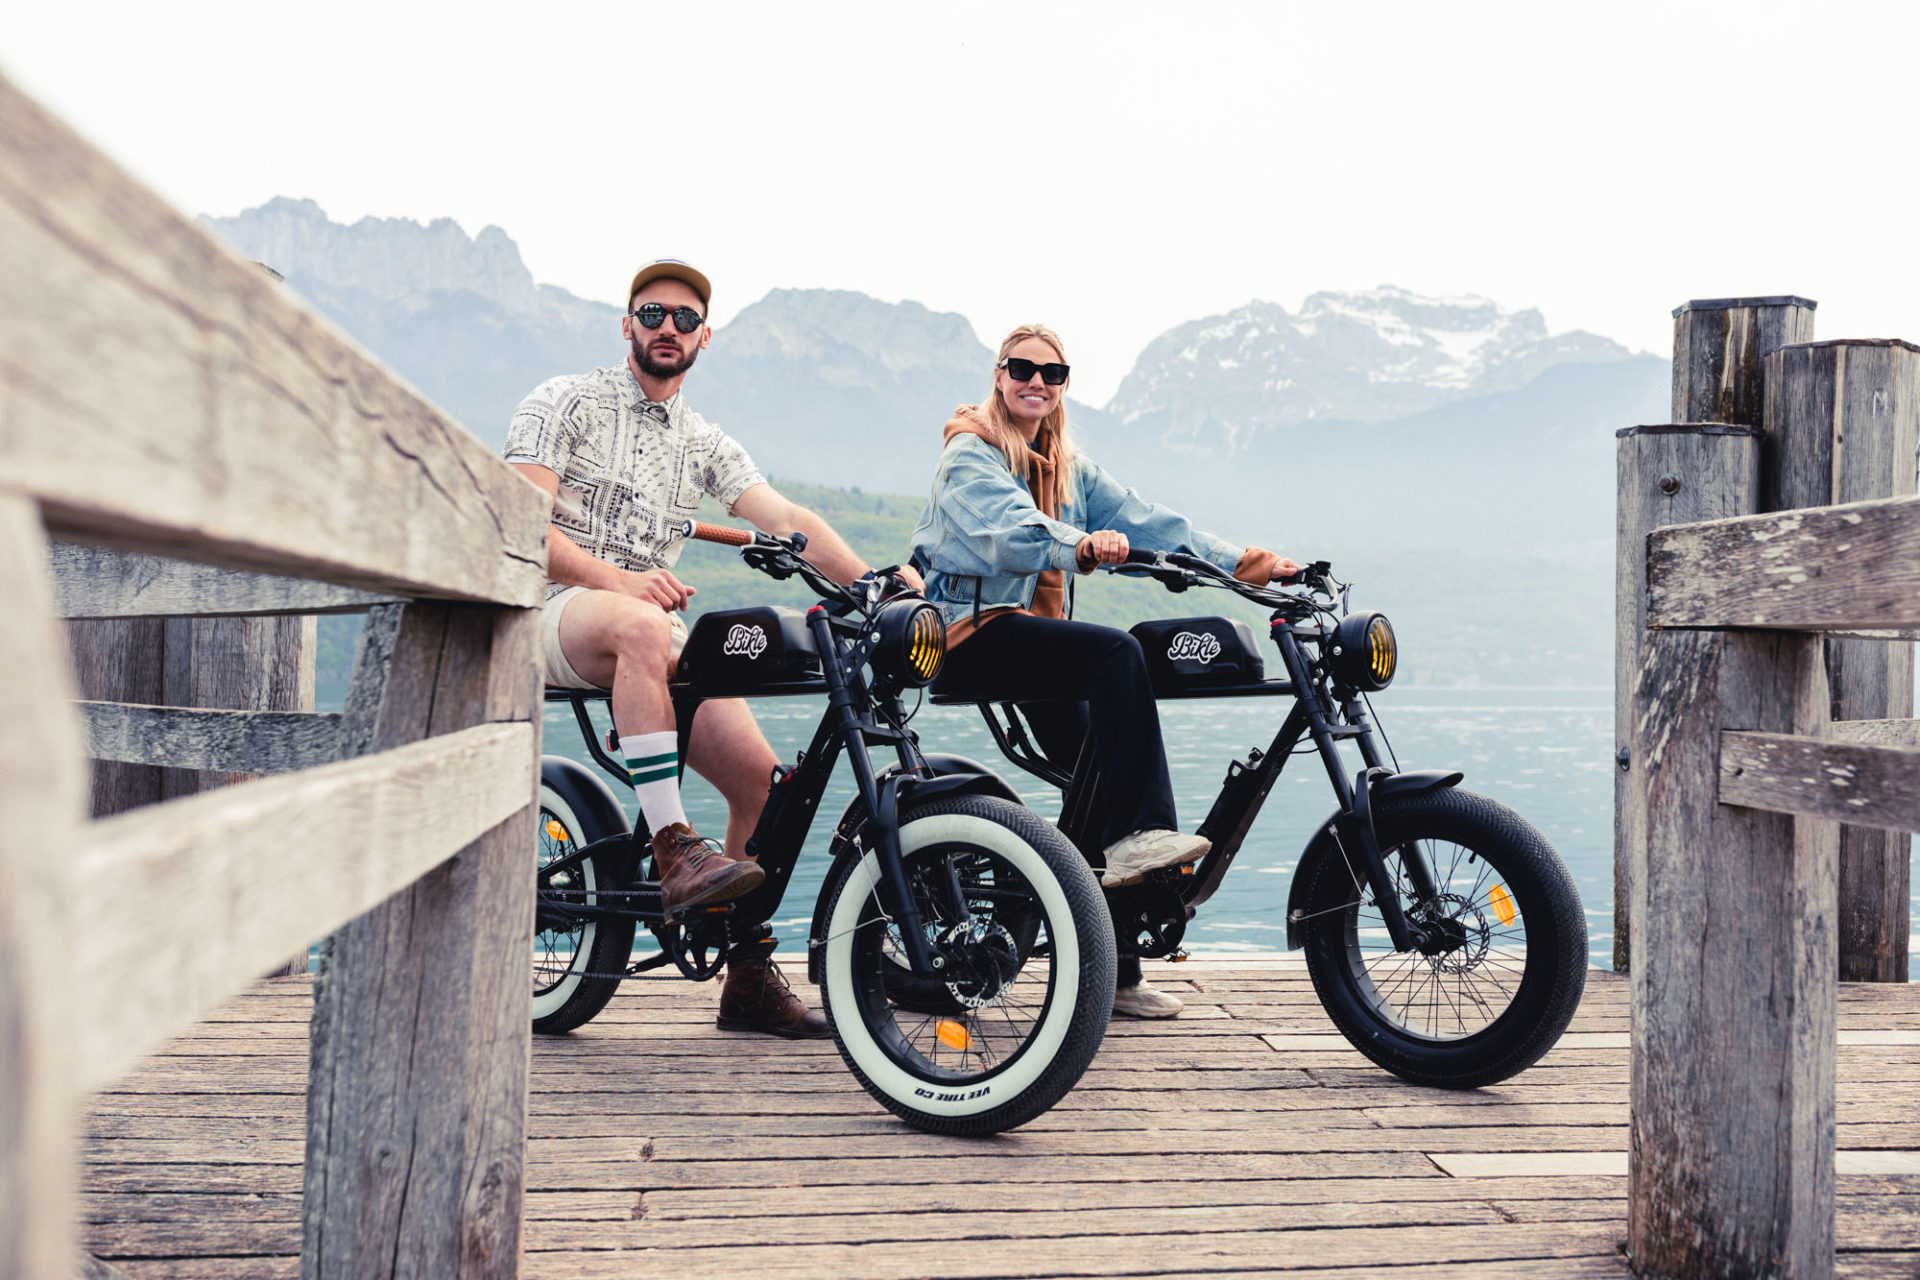 photo de deux personnes assises sur deux vélos électrique noirs ressemblant à une vieille moto, devant des montagne et un lac, sur un ponton en bois